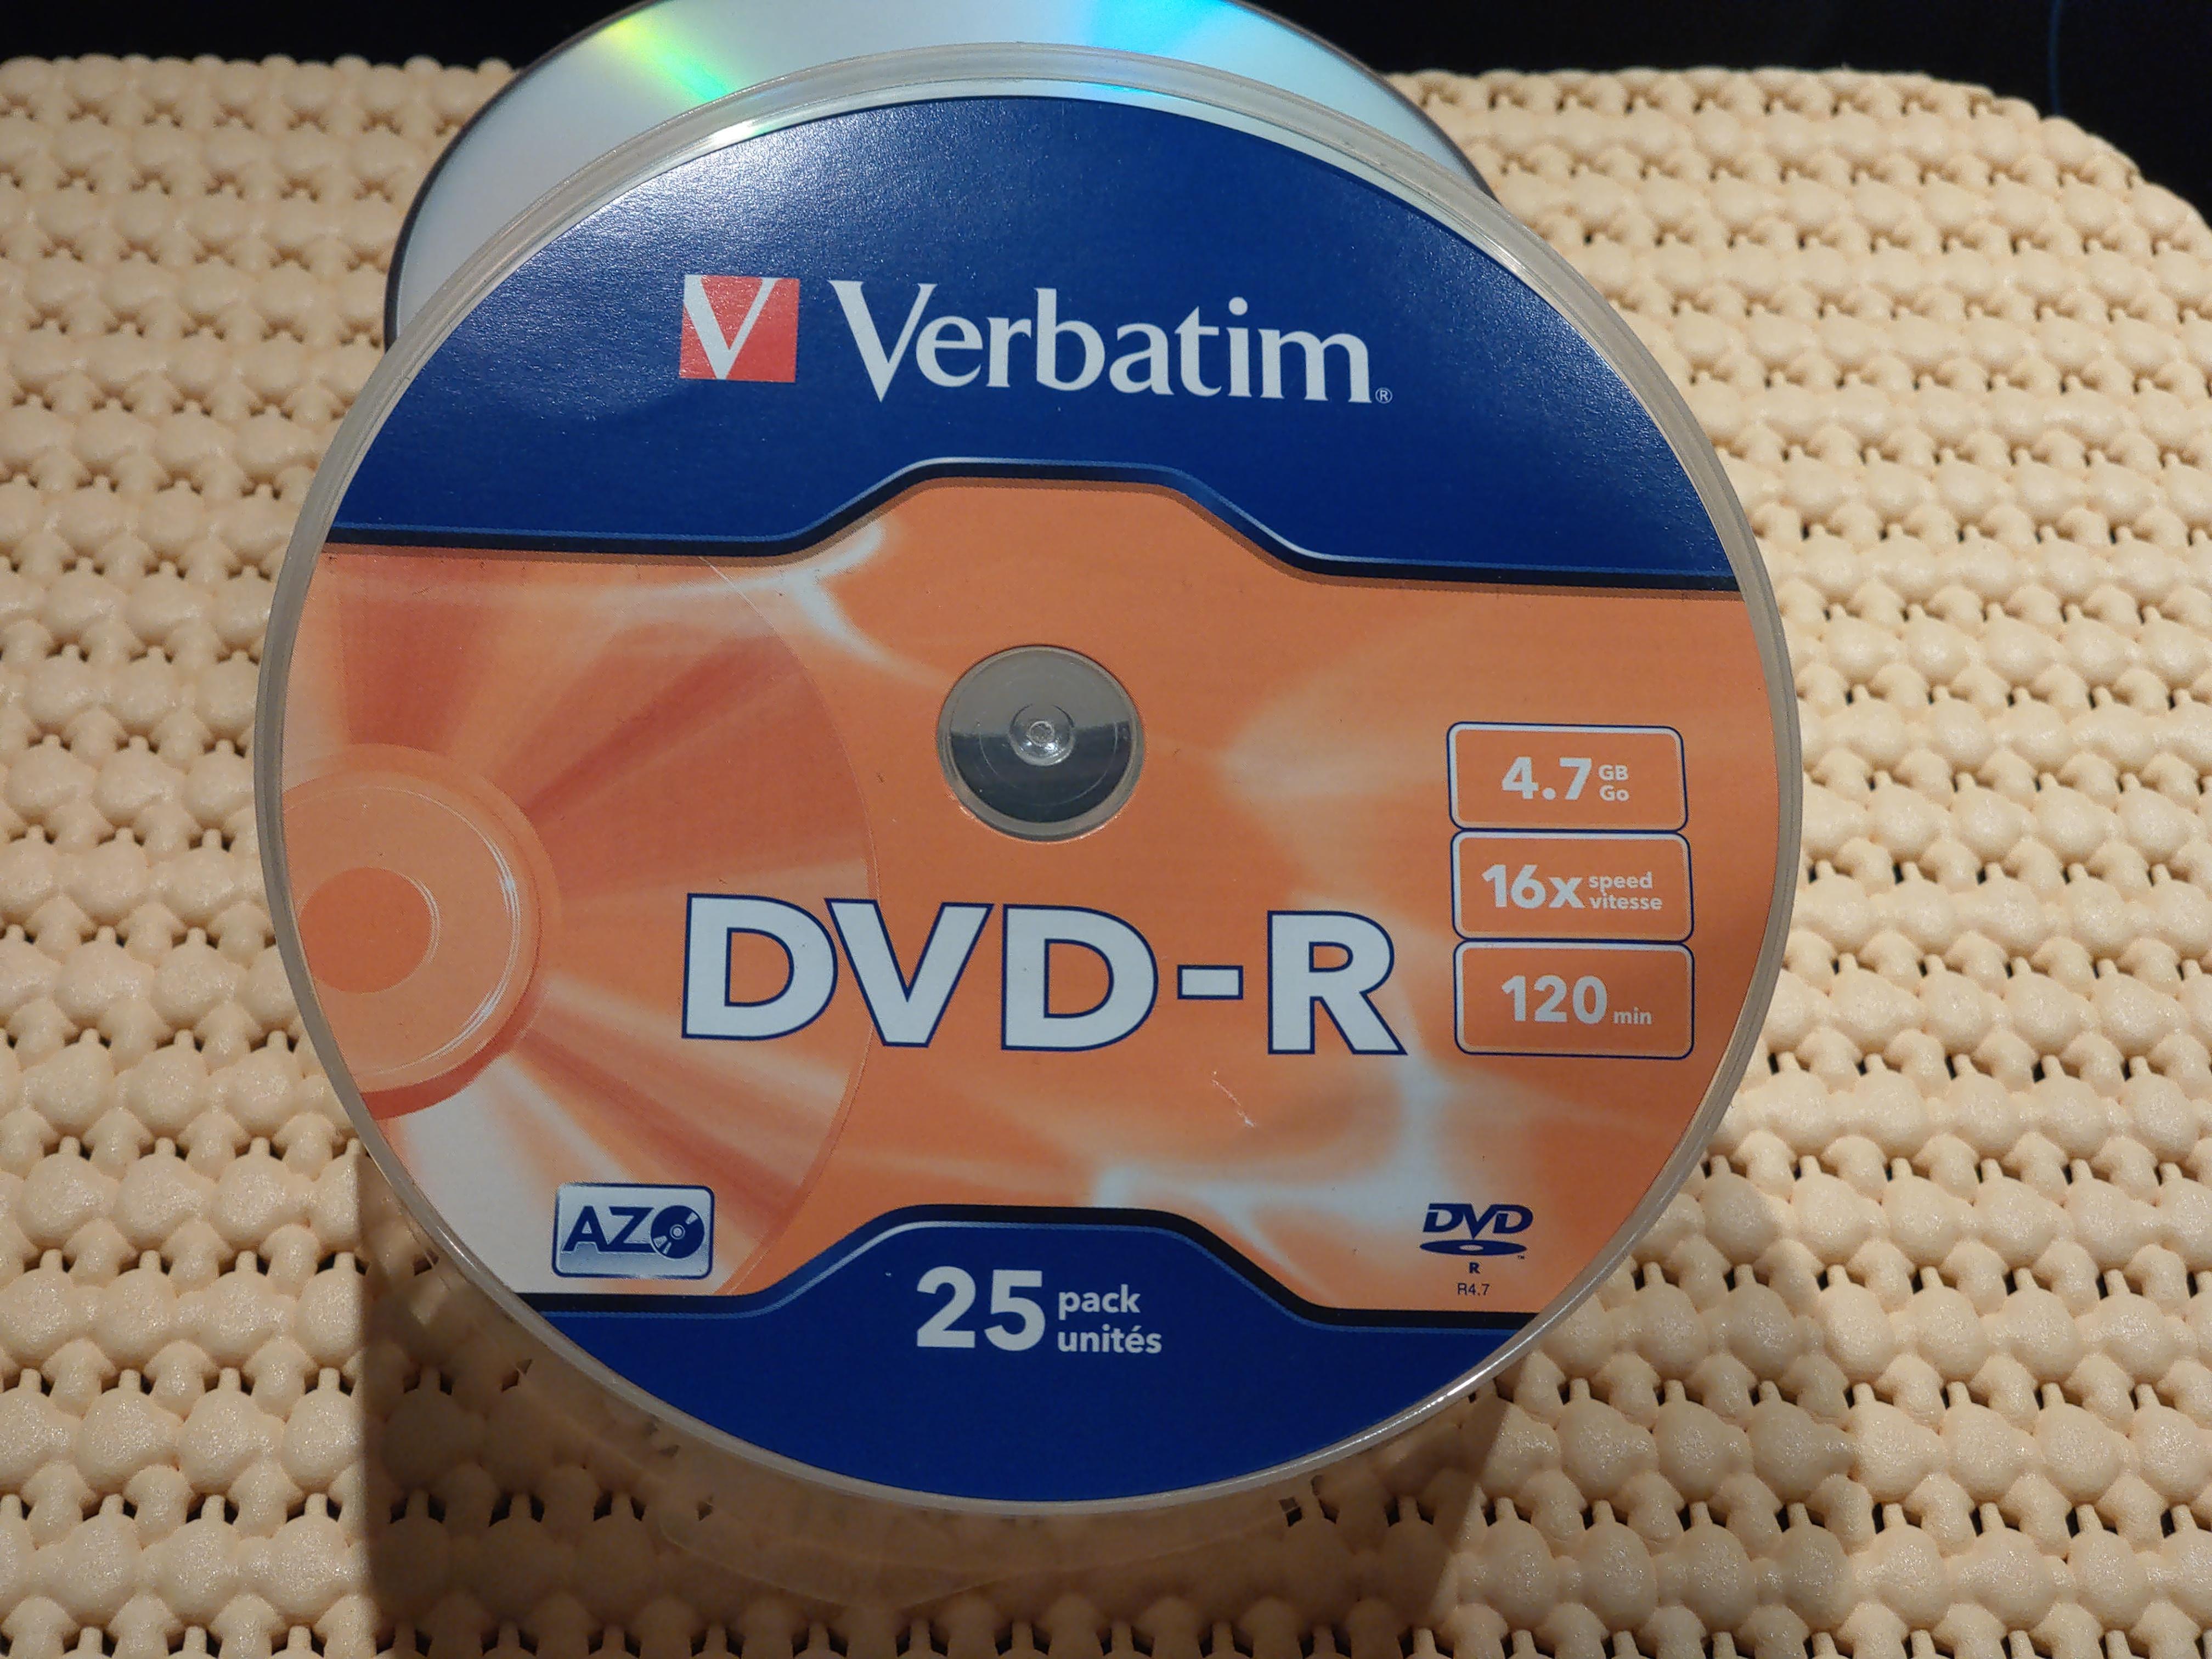 troc de troc donne un lot de 22 dvd-r verbatim (4.7 gb - 120 mn) image 0